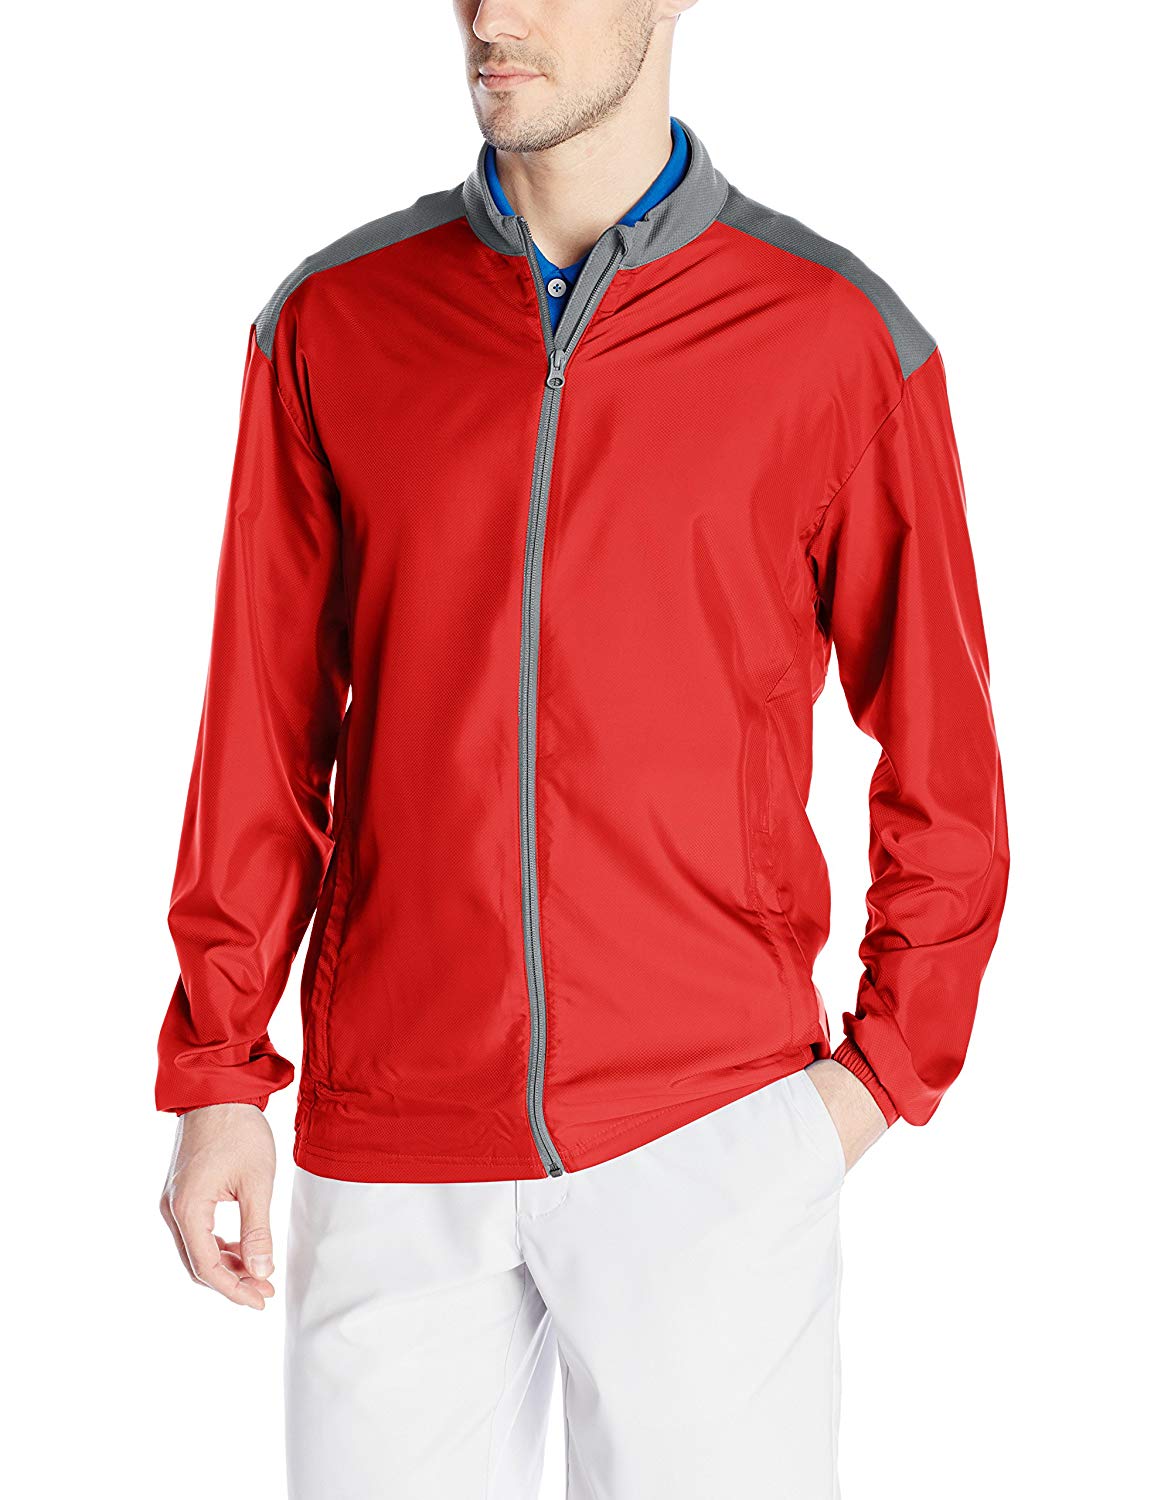  Adidas Golf Men's Club Wind Jacket